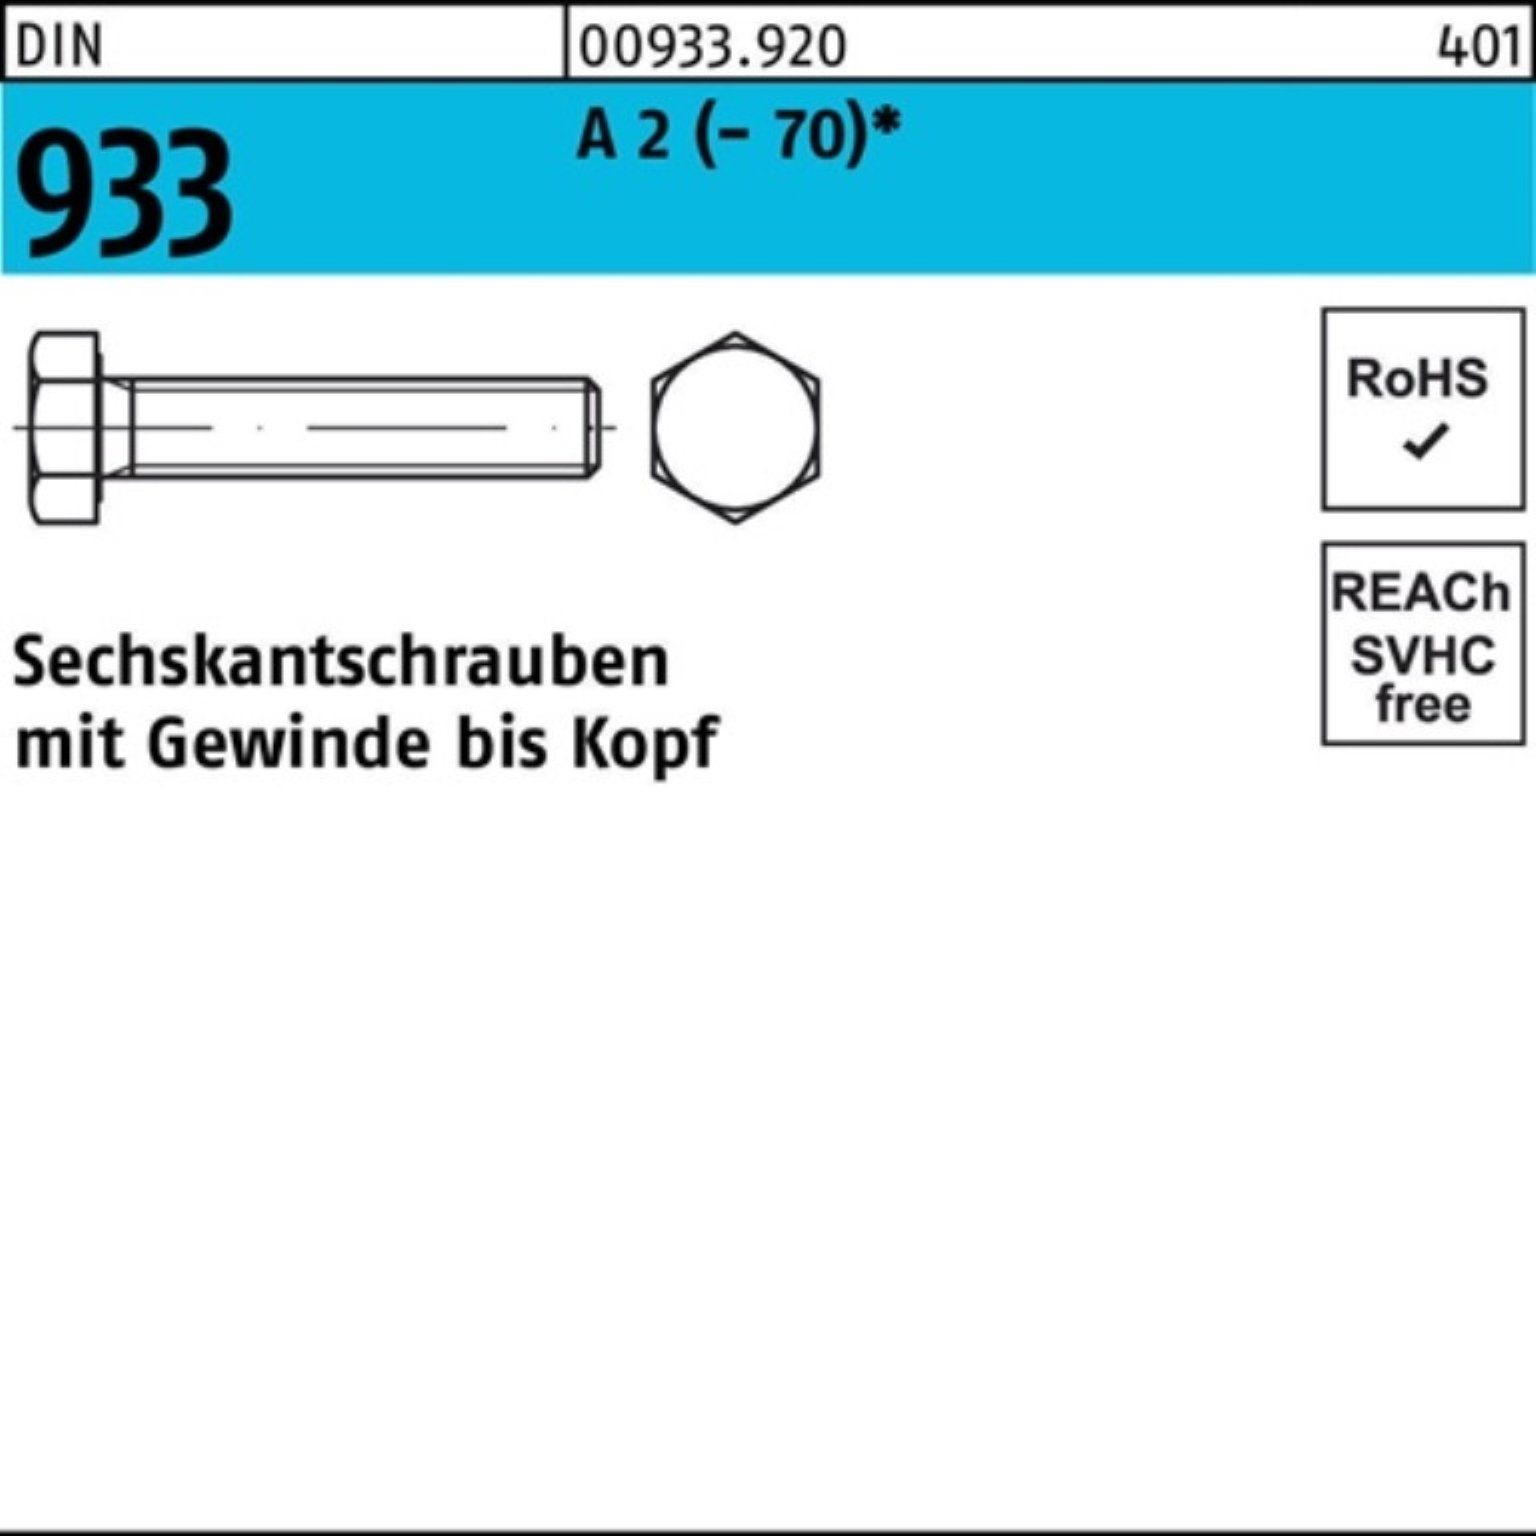 1 Stück Pack Reyher DIN VG 2 M27x Sechskantschraube 933 Sechskantschraube 100er (70) A DI 80